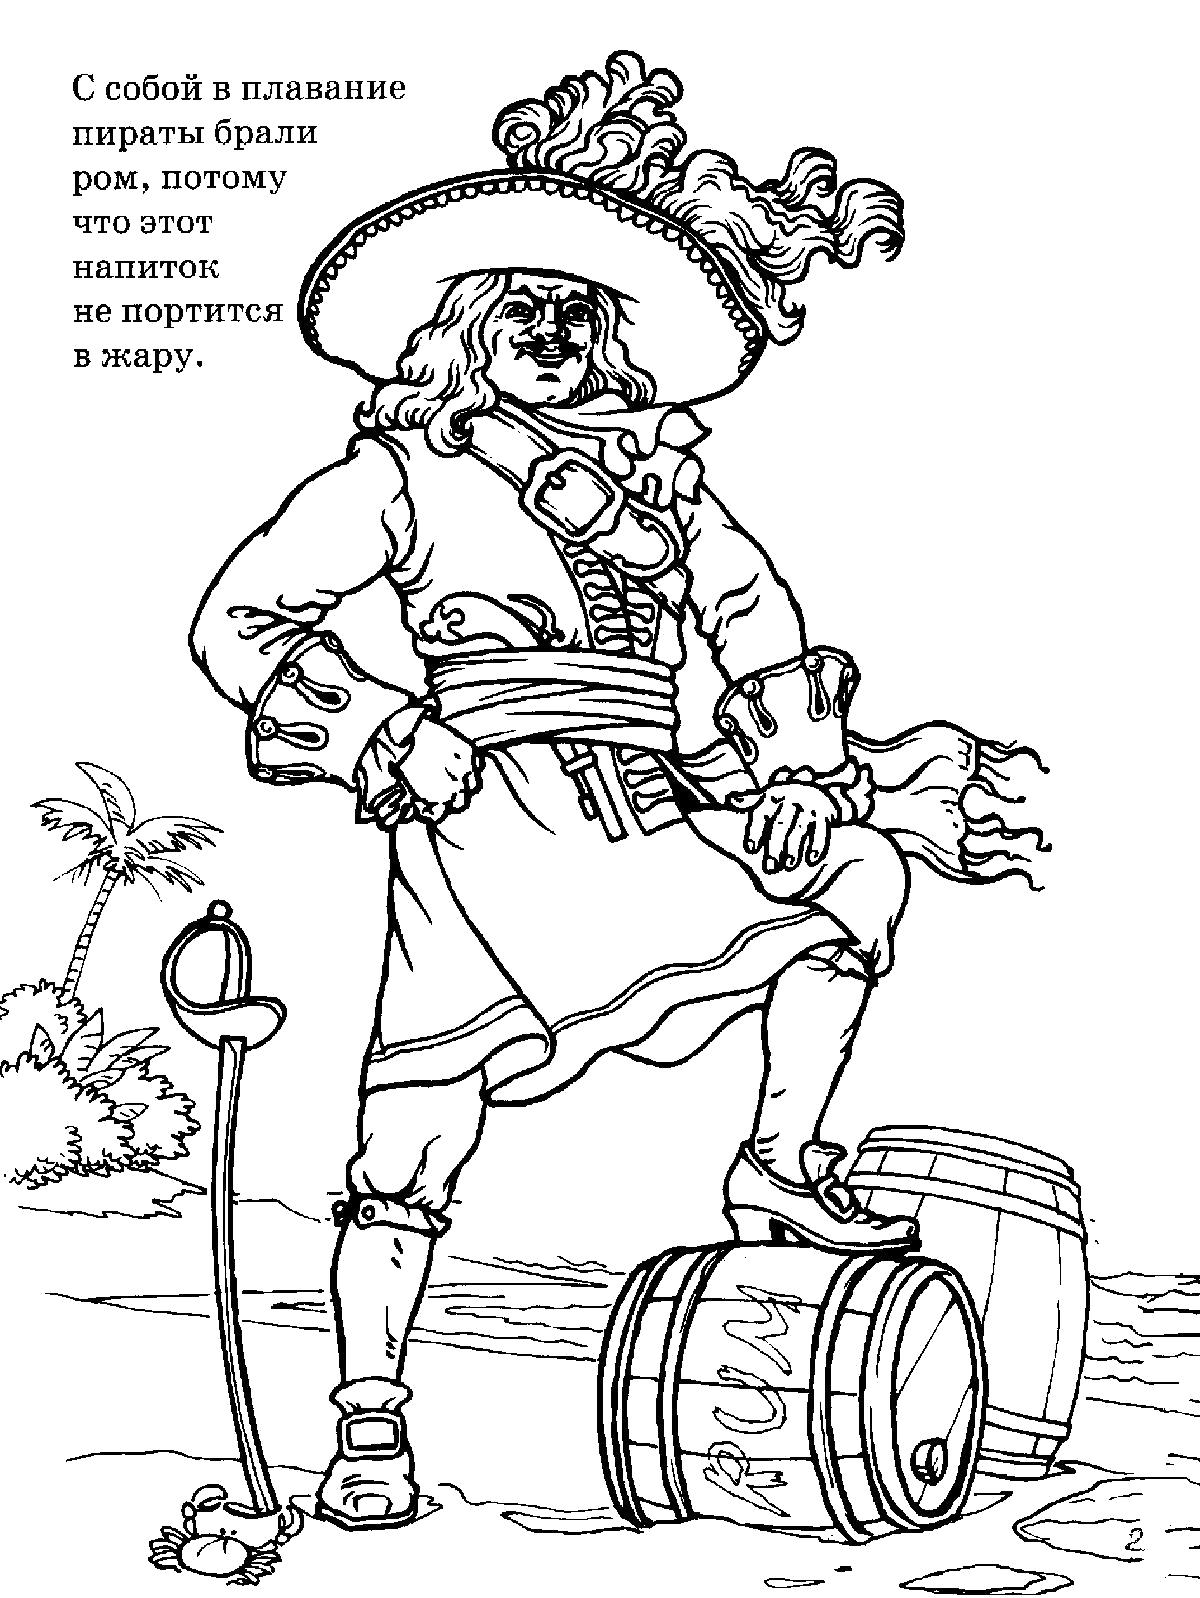 Раскраска Пиратский Барон: изображение пирата, бочки с ромом, сабли, маркиза, барона, разбойника, острова и берега моря (барон, берег)